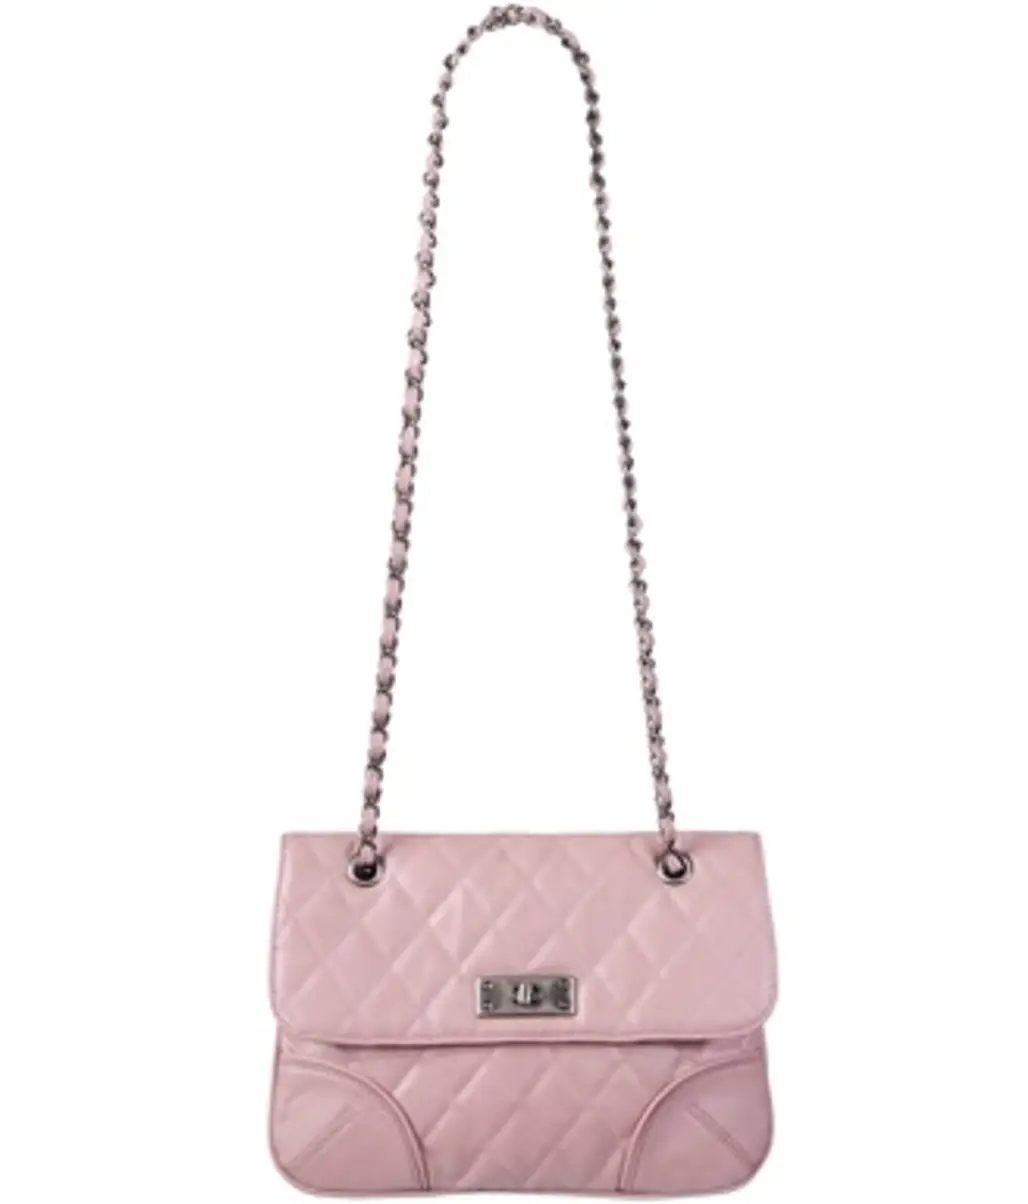 Forever21 Leatherette Matelasse Handbag